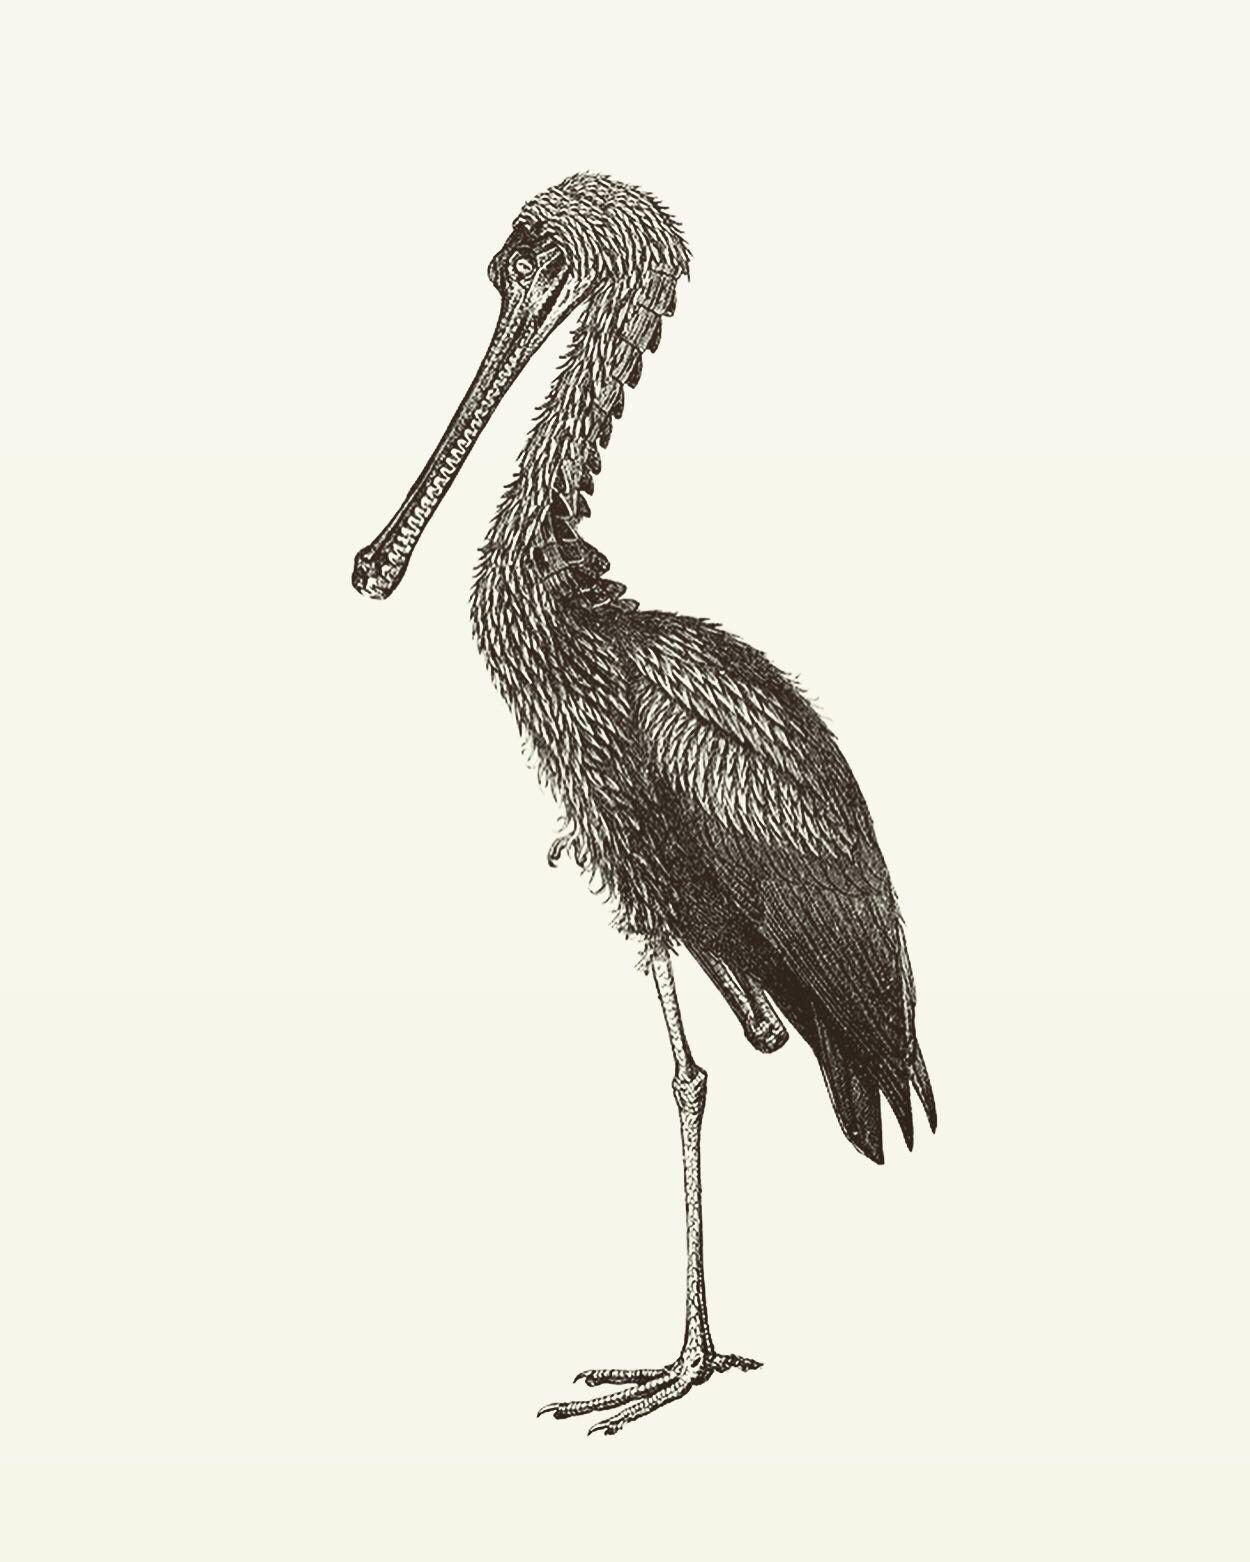 Animal Illustrations wood engraving, stork crocodile